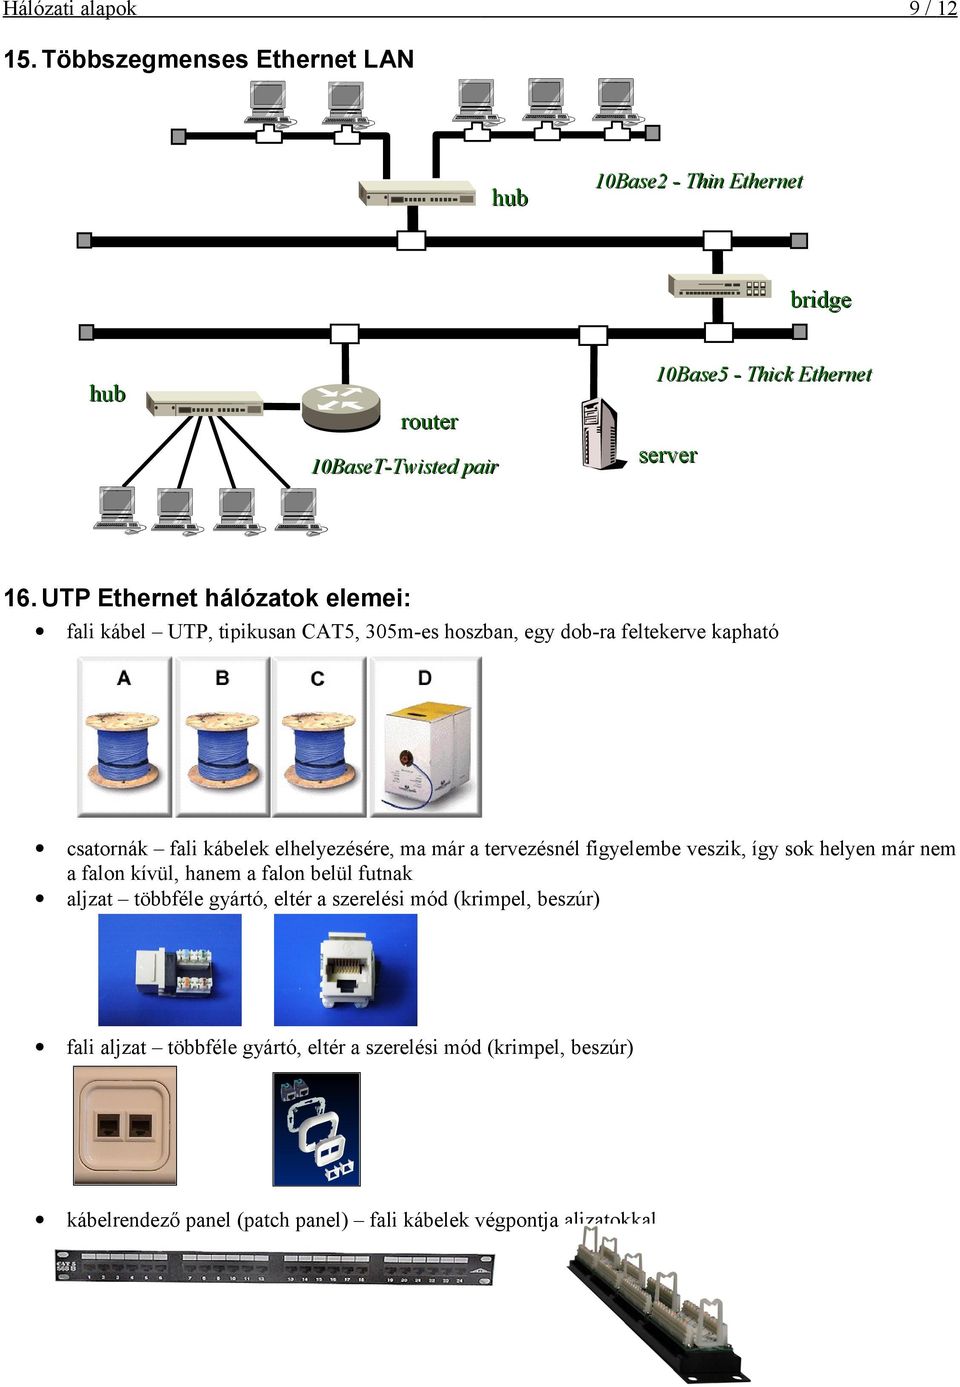 UTP Ethernet hálózatok elemei: fali kábel UTP, tipikusan CAT5, 305m-es hoszban, egy dob-ra feltekerve kapható csatornák fali kábelek elhelyezésére, ma